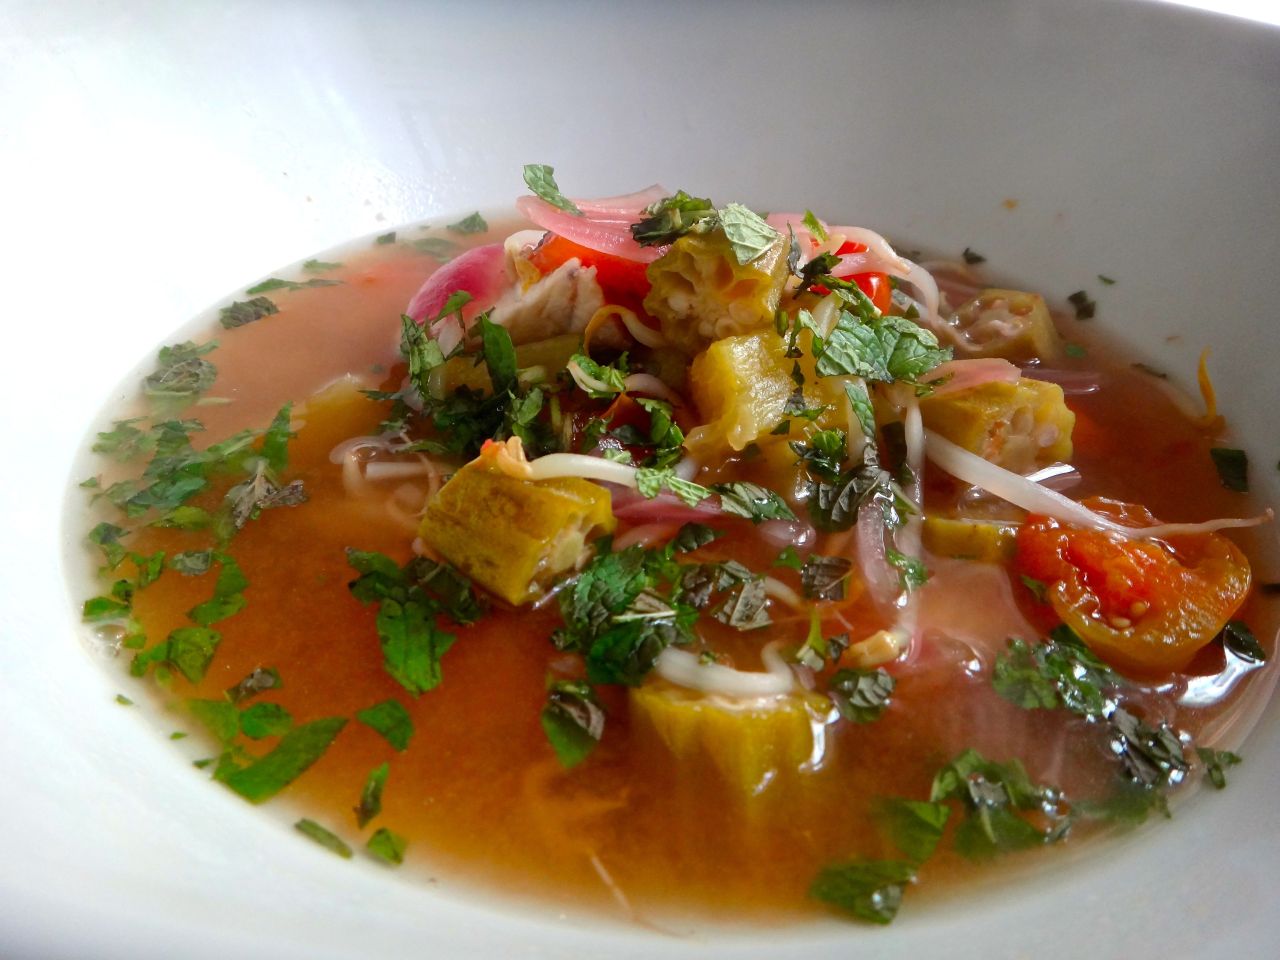 Vietnamese style, sour fish soup